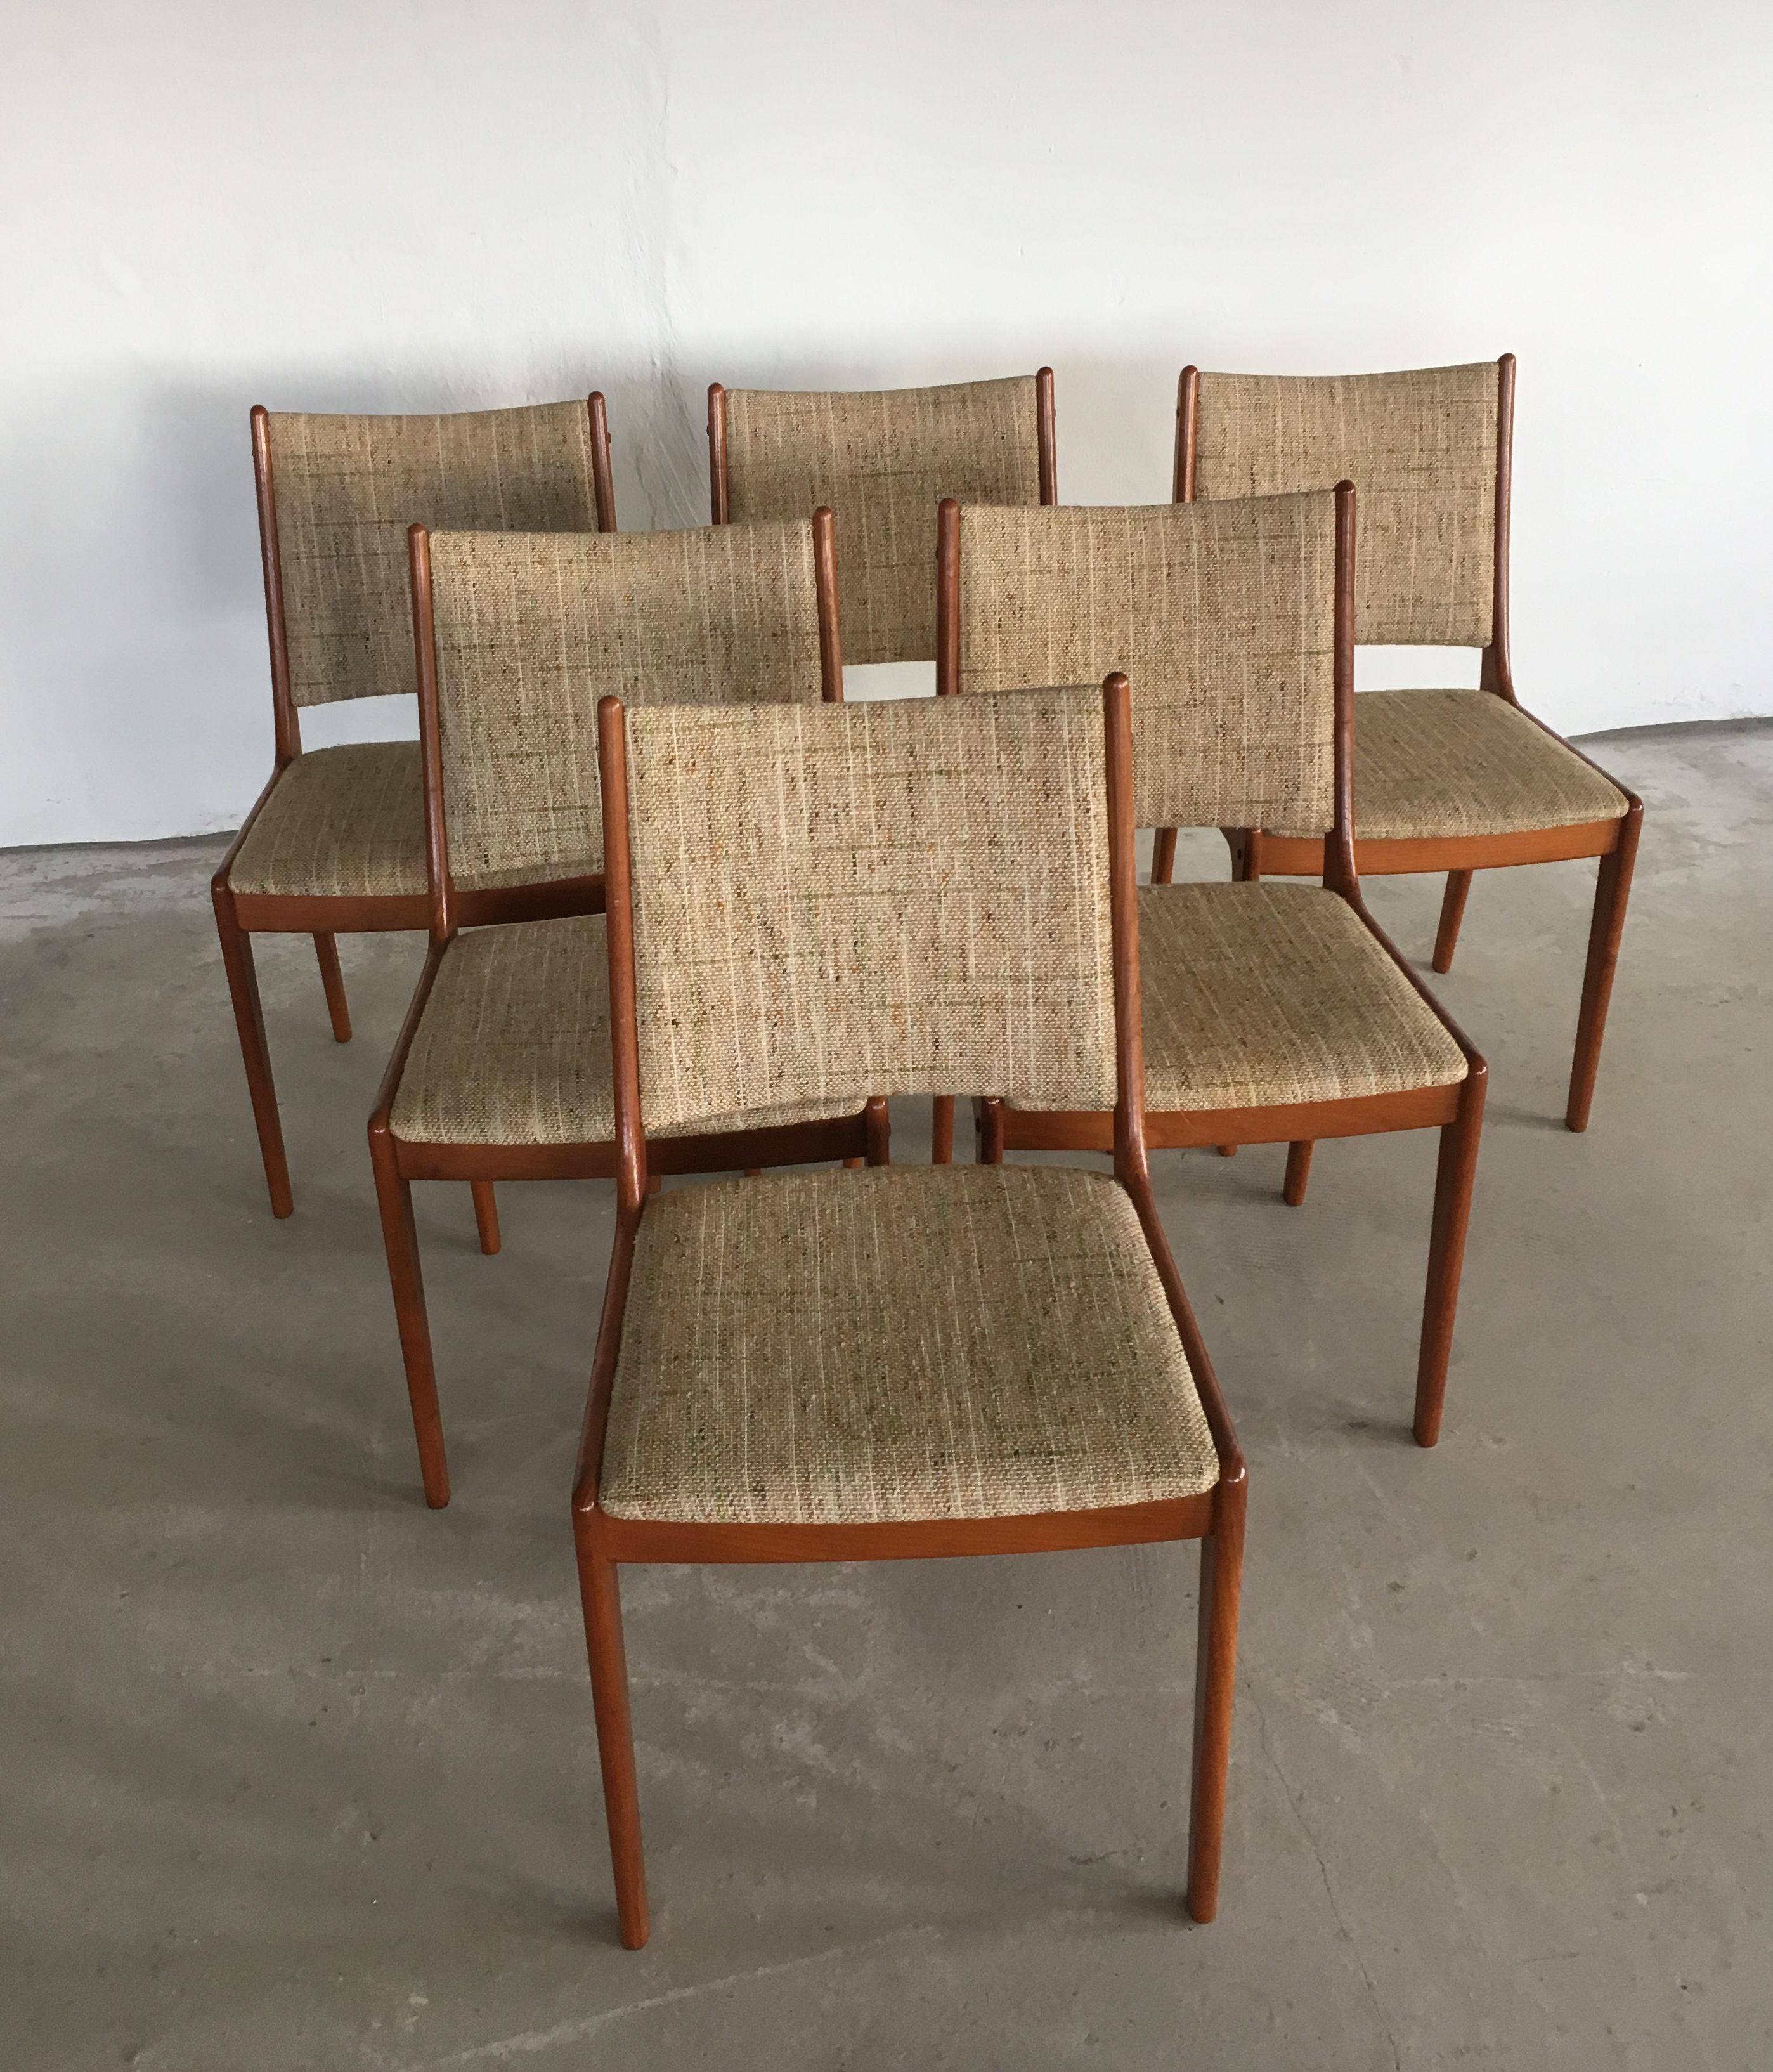 Satz von sechs Johannes Andersen Esszimmerstühlen aus Teakholz aus den 1960er Jahren von Uldum Møbler, Dänemark.

Die Esszimmerstühle zeichnen sich durch ein schlichtes, aber elegantes Design aus, das in den meisten Häusern eine gute Figur macht.